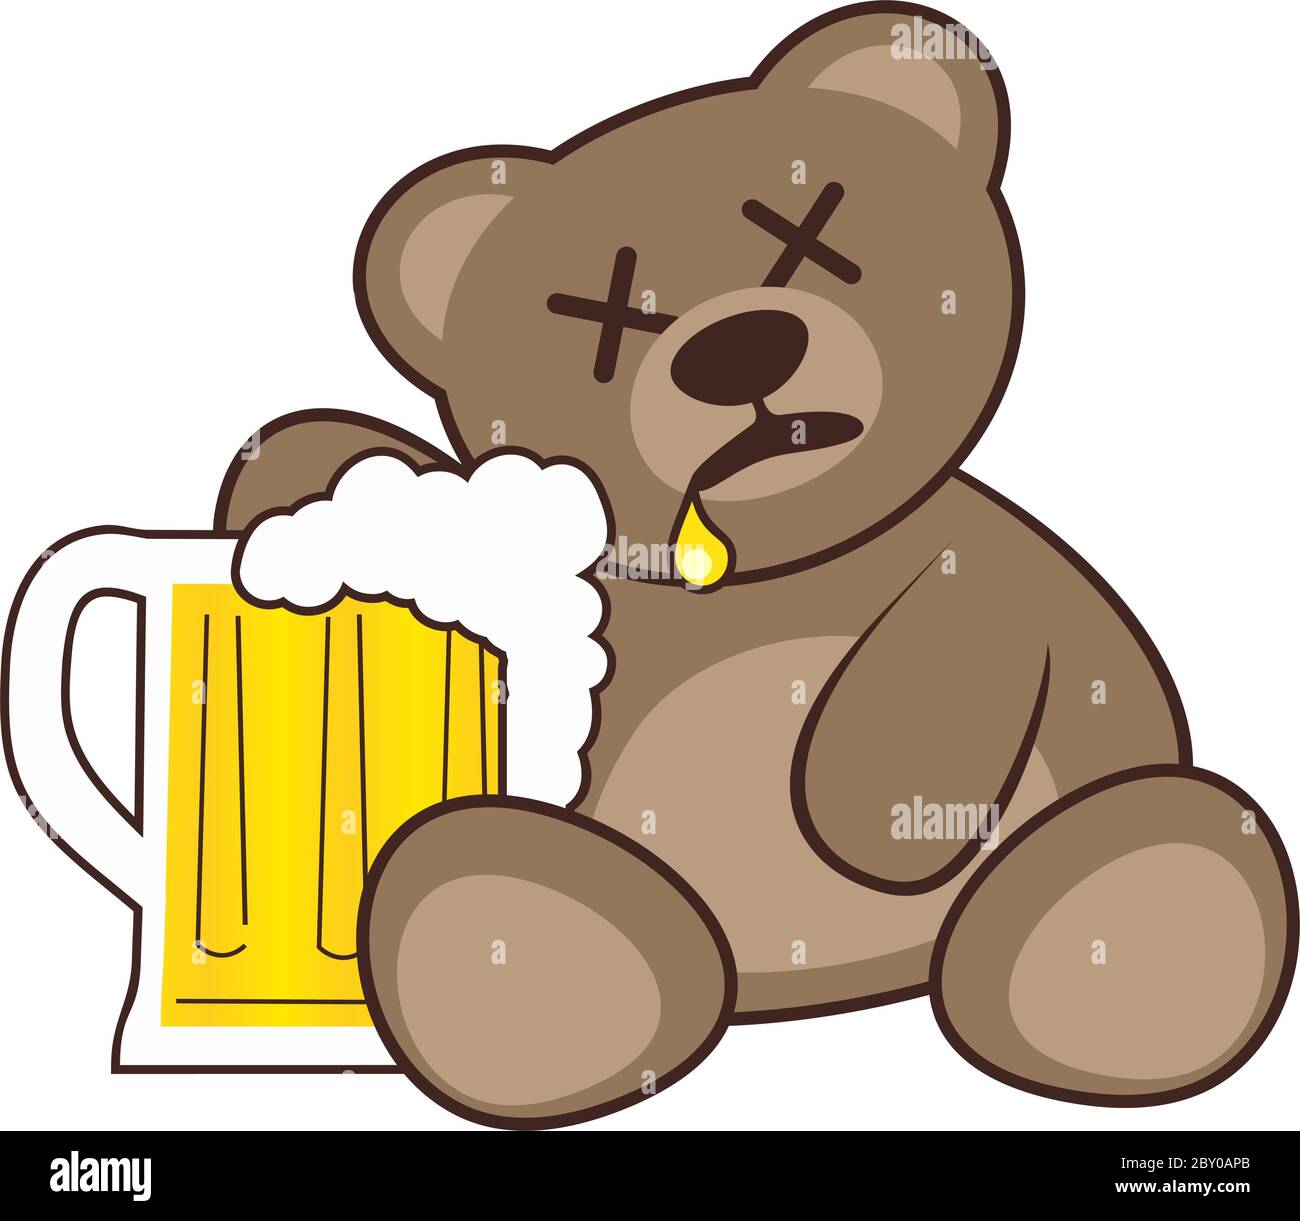 vermijden Zij zijn Willen Beer and bear Stock Vector Image & Art - Alamy